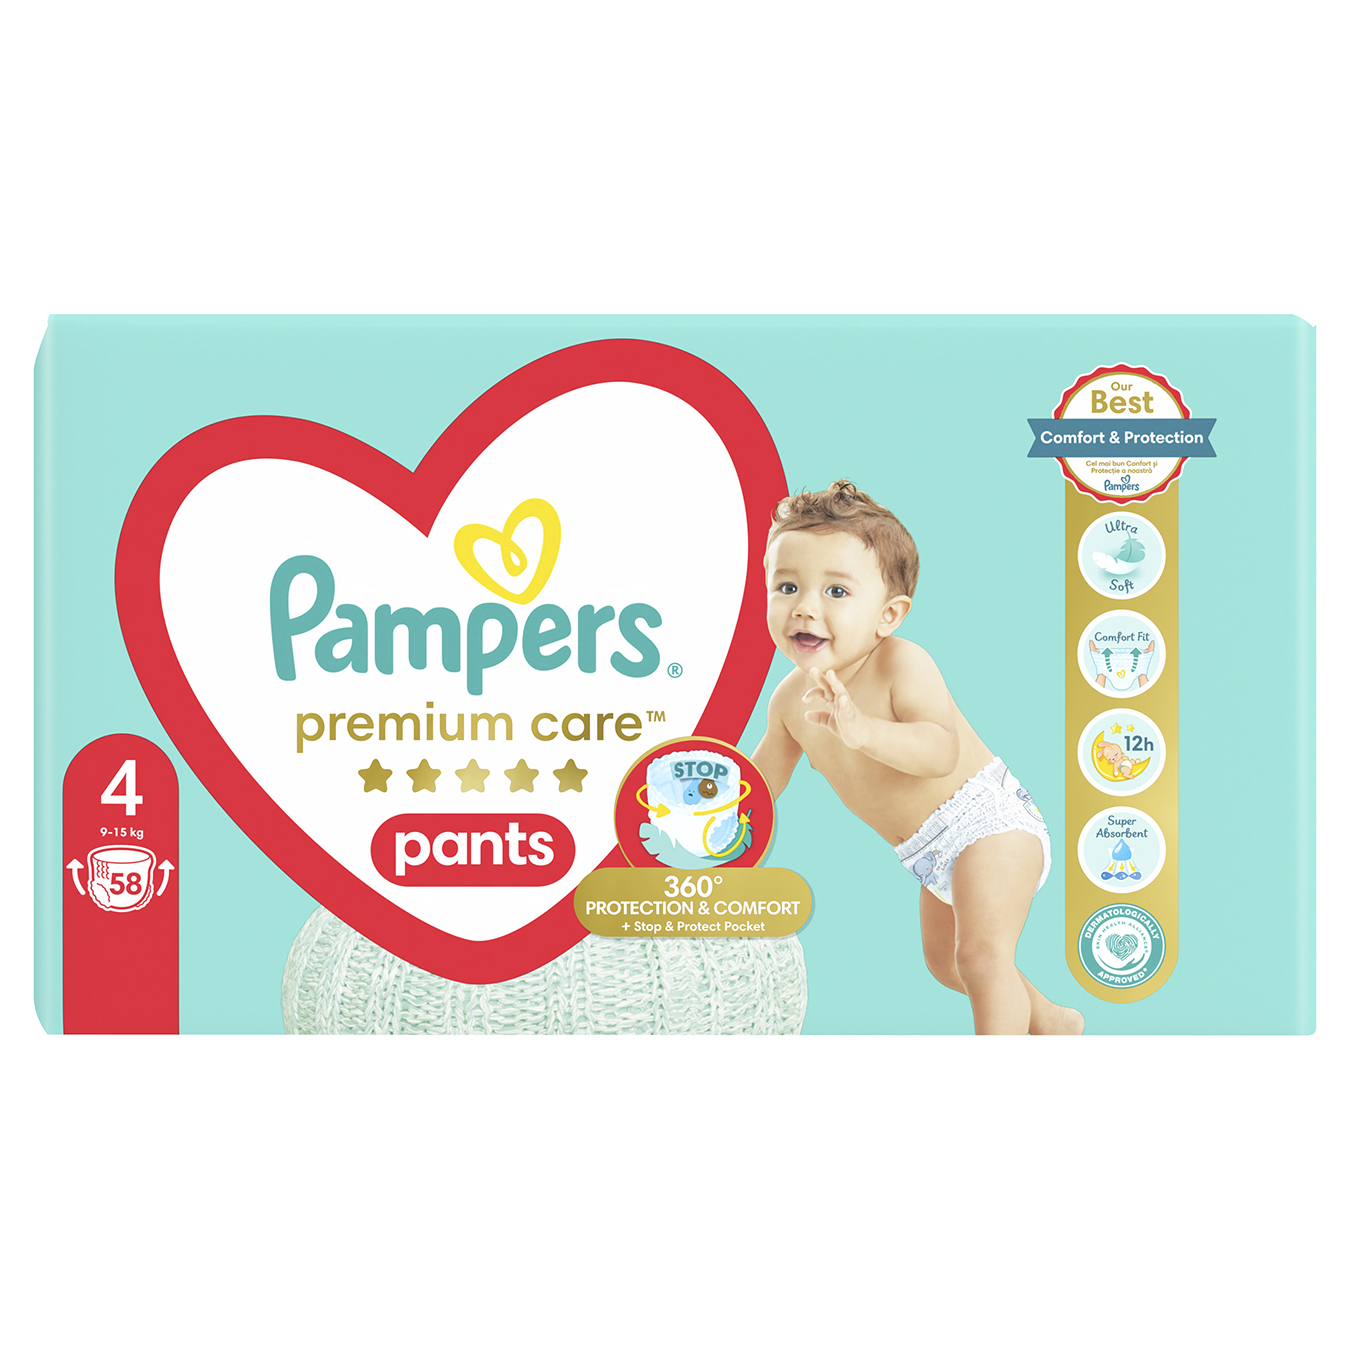 Pampers Diaper panties Premium Care 4 42248 kg children's 58 pcs